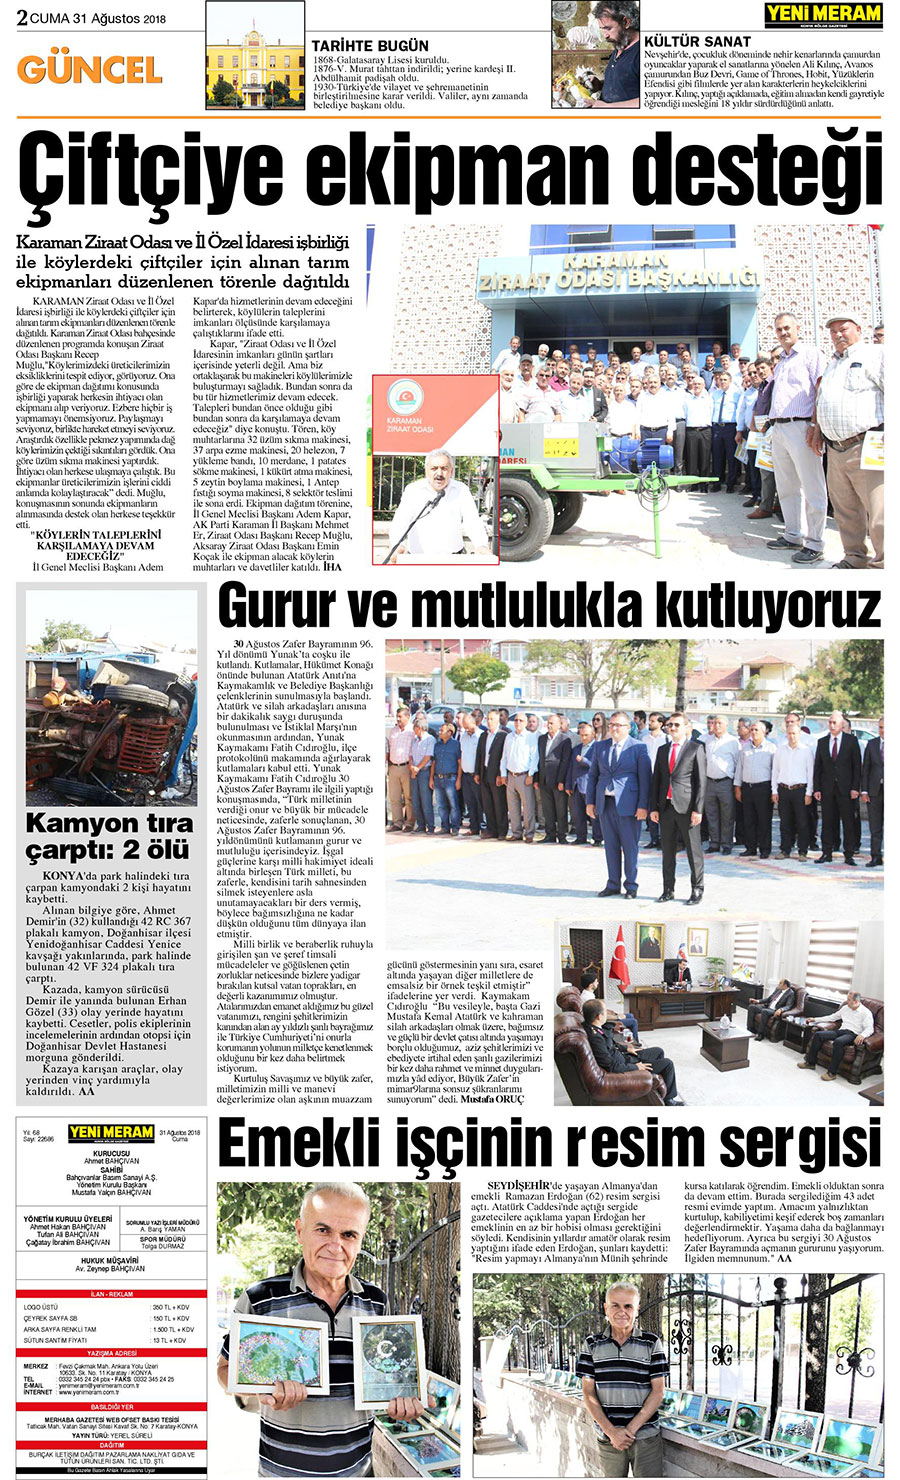 31 Ağustos 2018 Yeni Meram Gazetesi